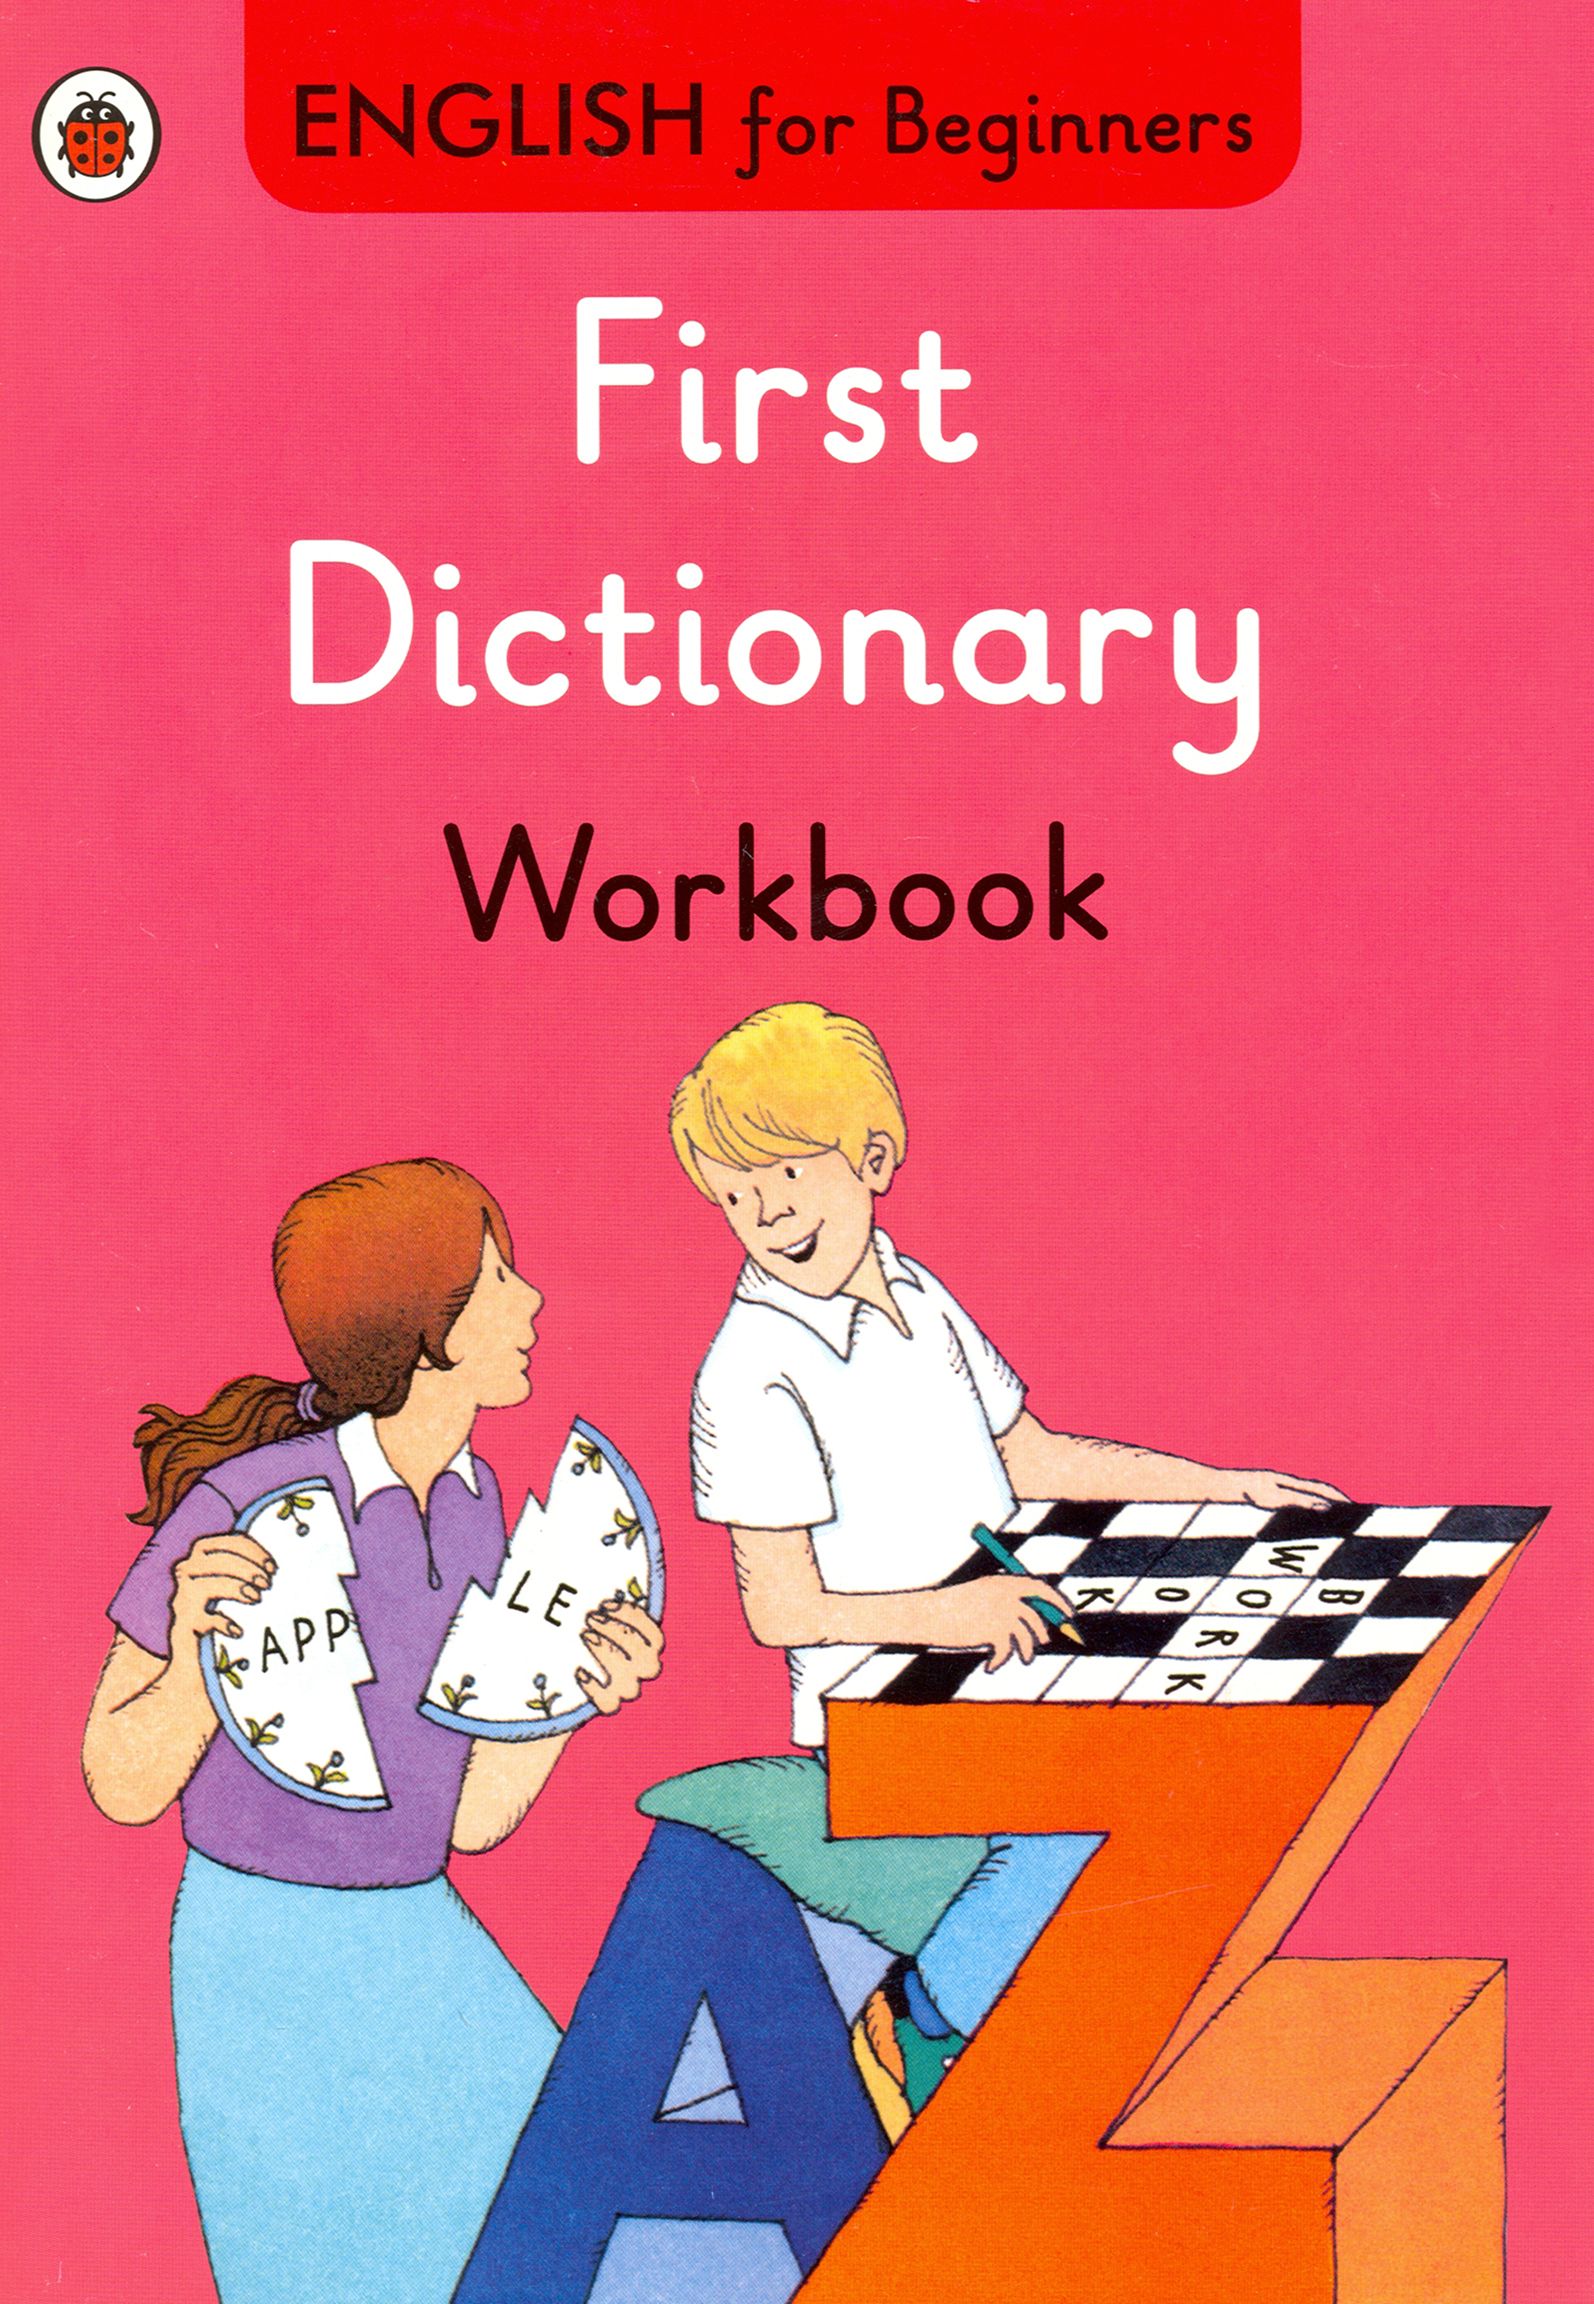 Рой инглиш. Dictionary for Beginners. Beginner Dictionary. Картинки которые можно описать на английском. Young children's picture Dictionary Workbook.